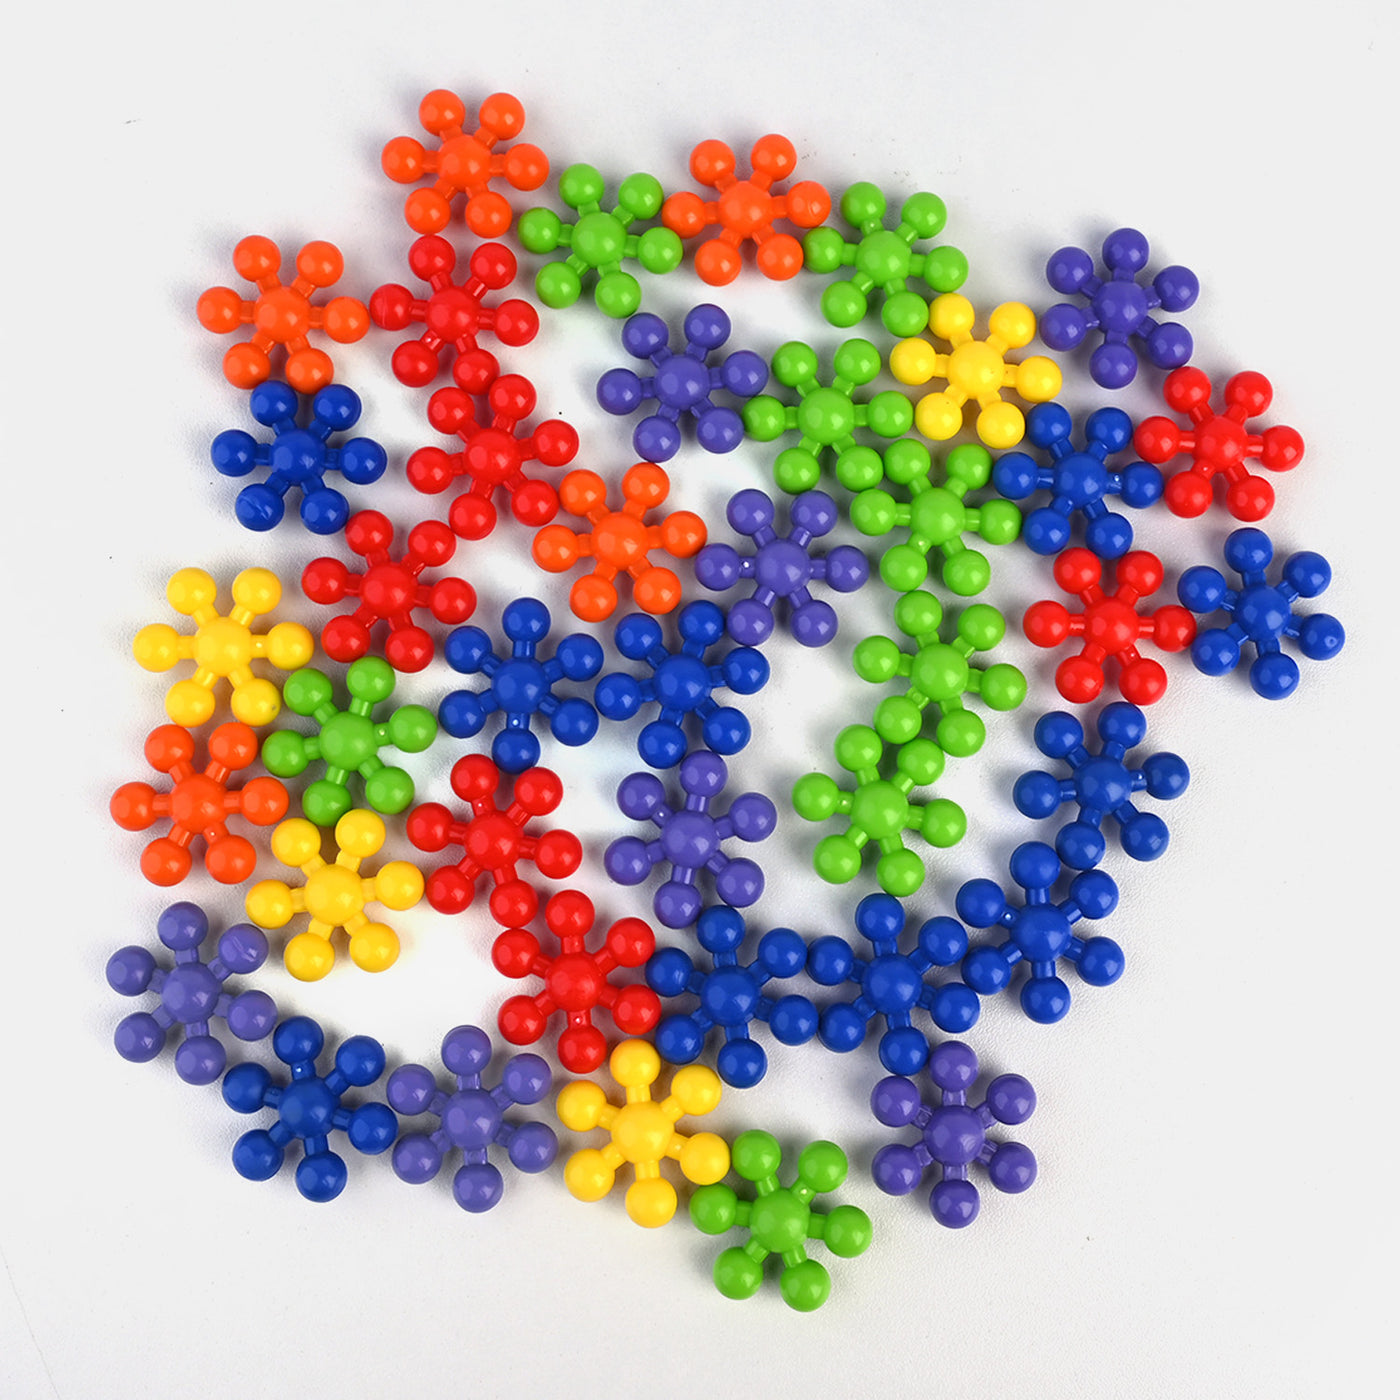 Plastic Play Puzzle Educational Clip Connect Block Set | 100 Pieces